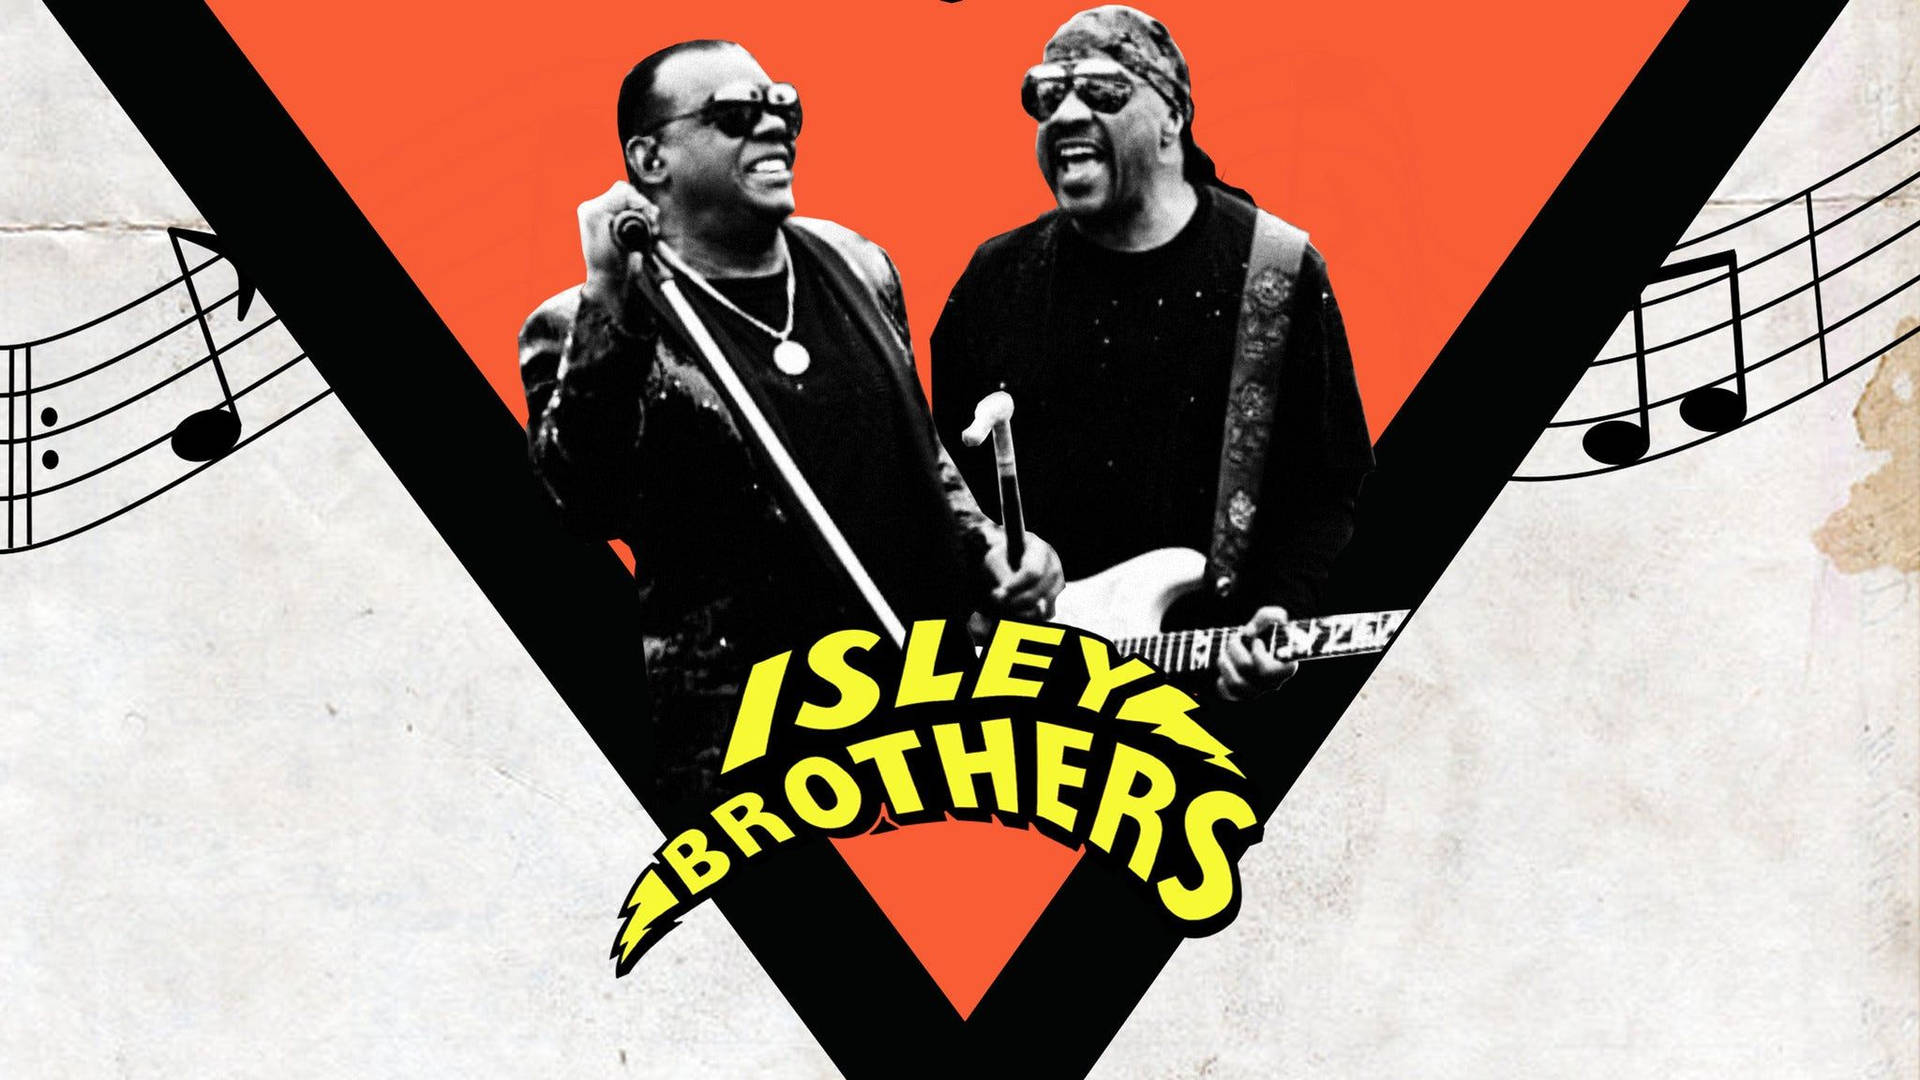 Dastour-plakat Zum 60. Jubiläum Der Isley Brothers Wallpaper